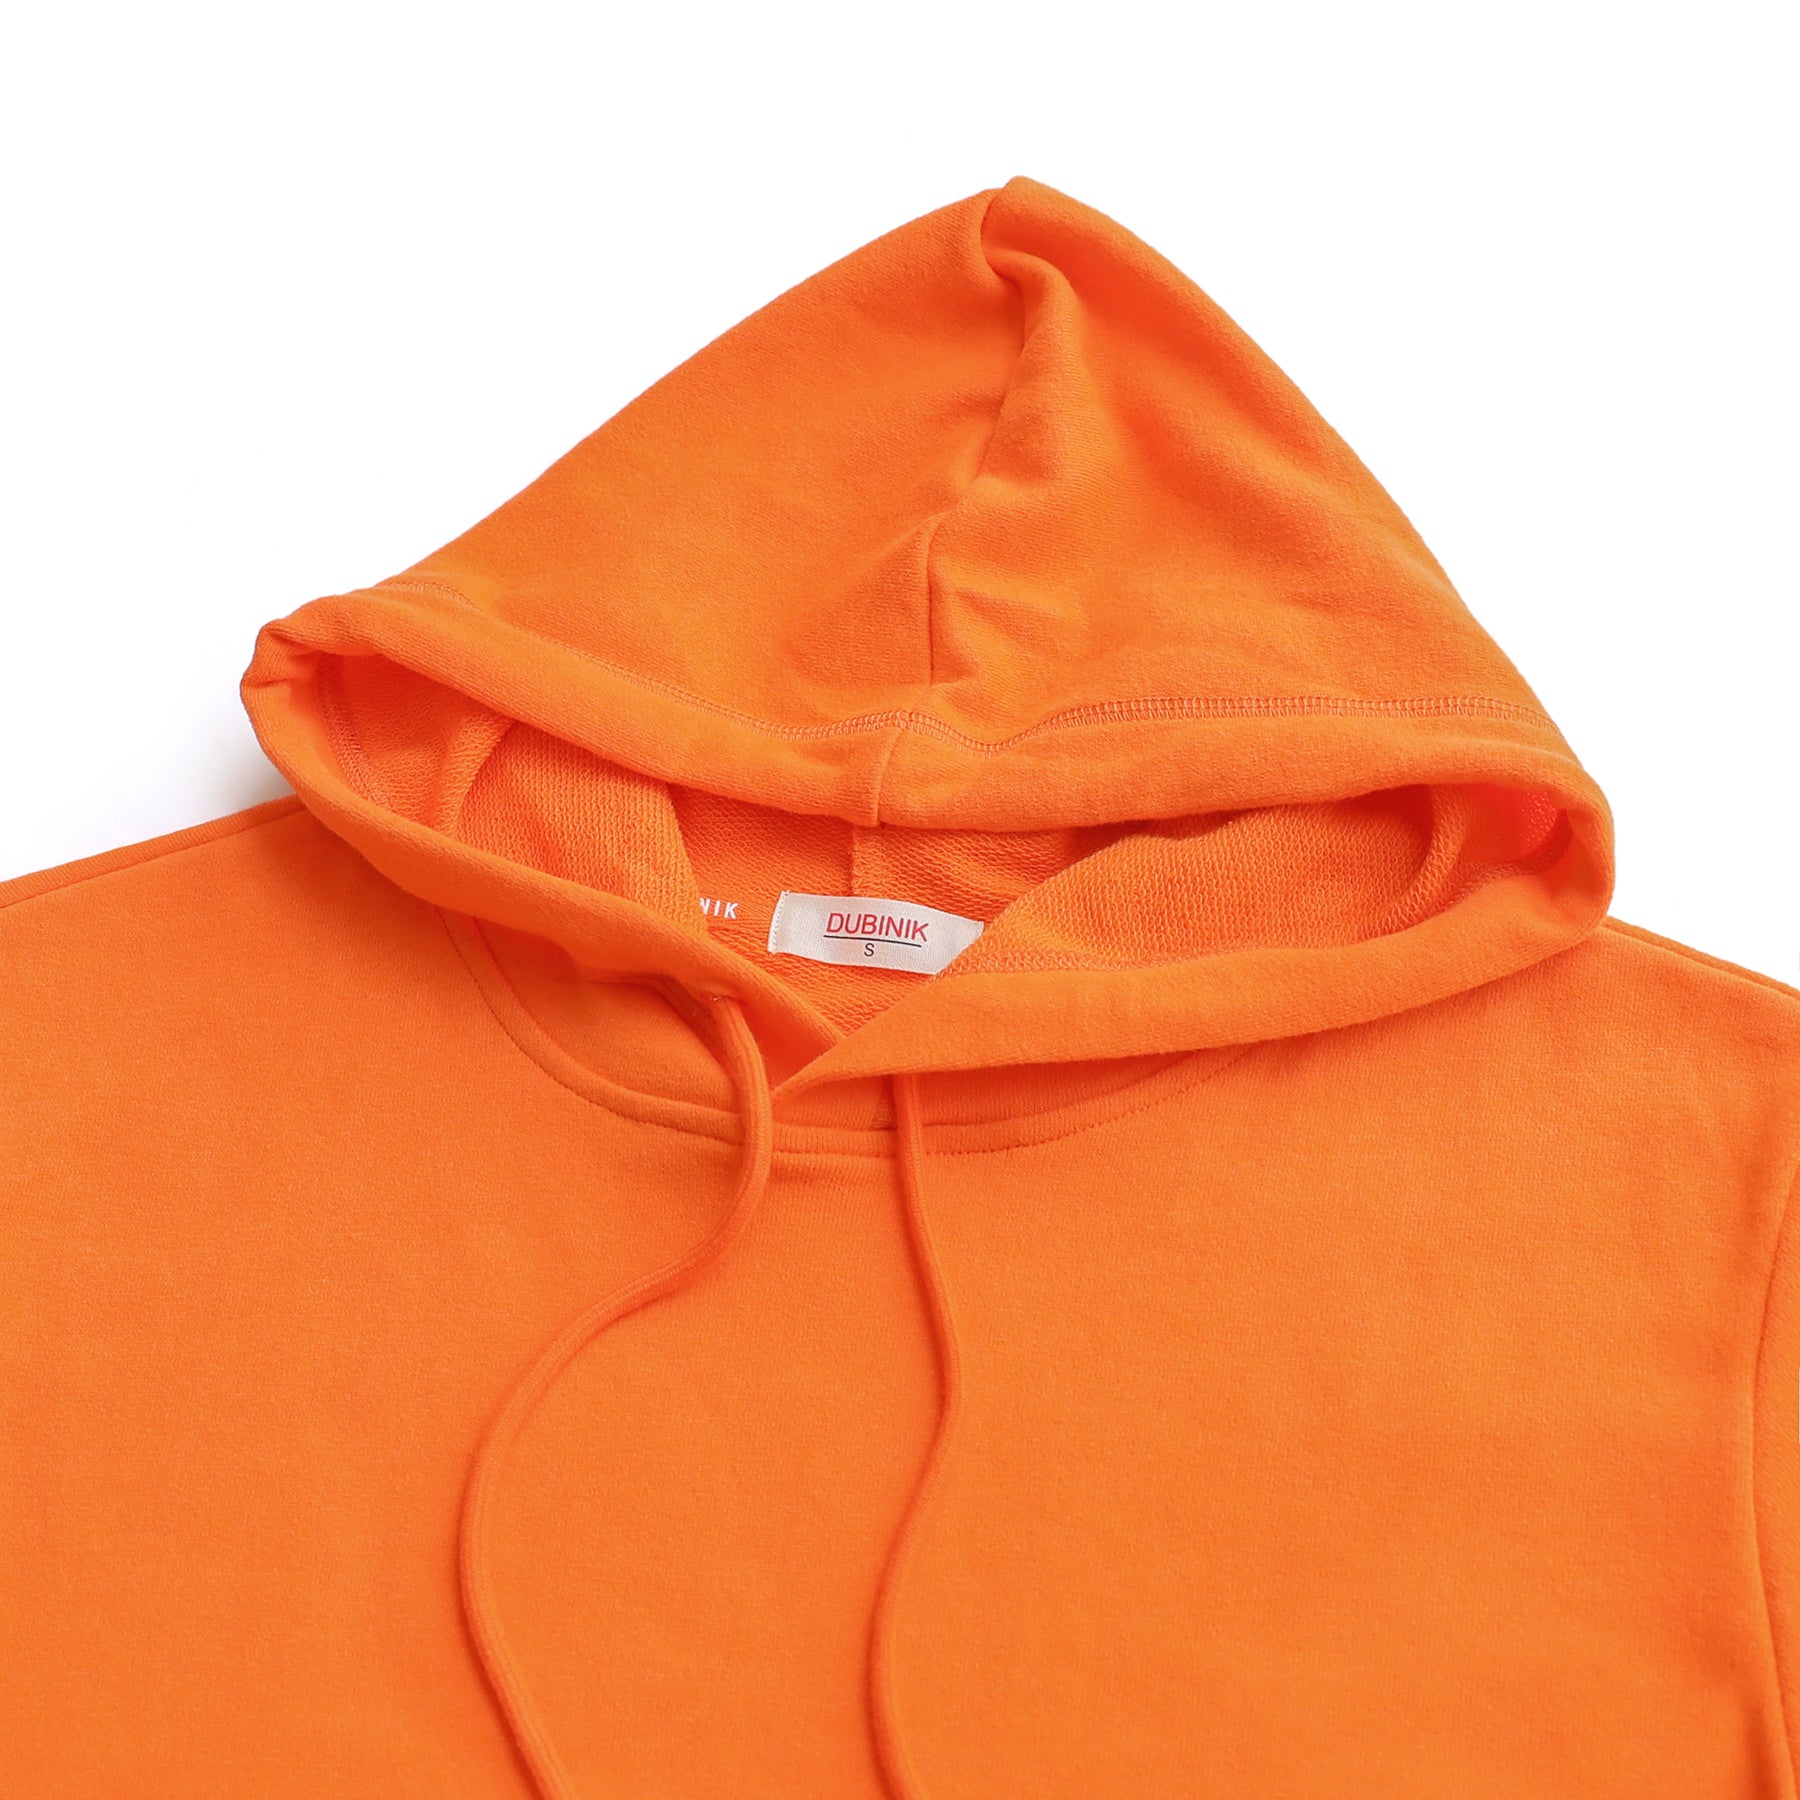 Men's Hoodies short-sleeved hooded sweatshirt #0609